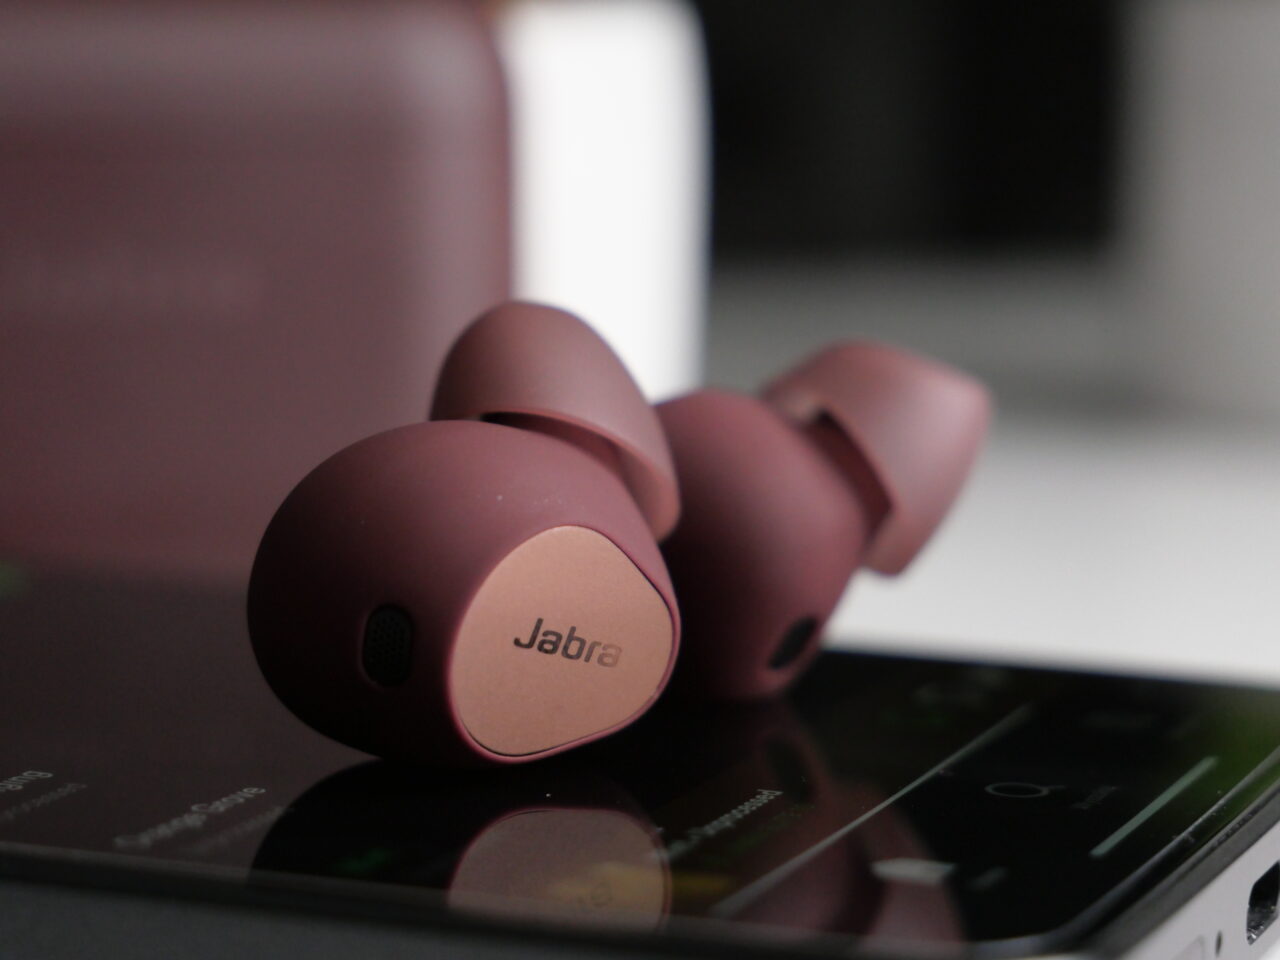 Zbliżenie bezprzewodowych słuchawek dousznych marki Jabra w kolorze bordowym, leżących na smartfonie.